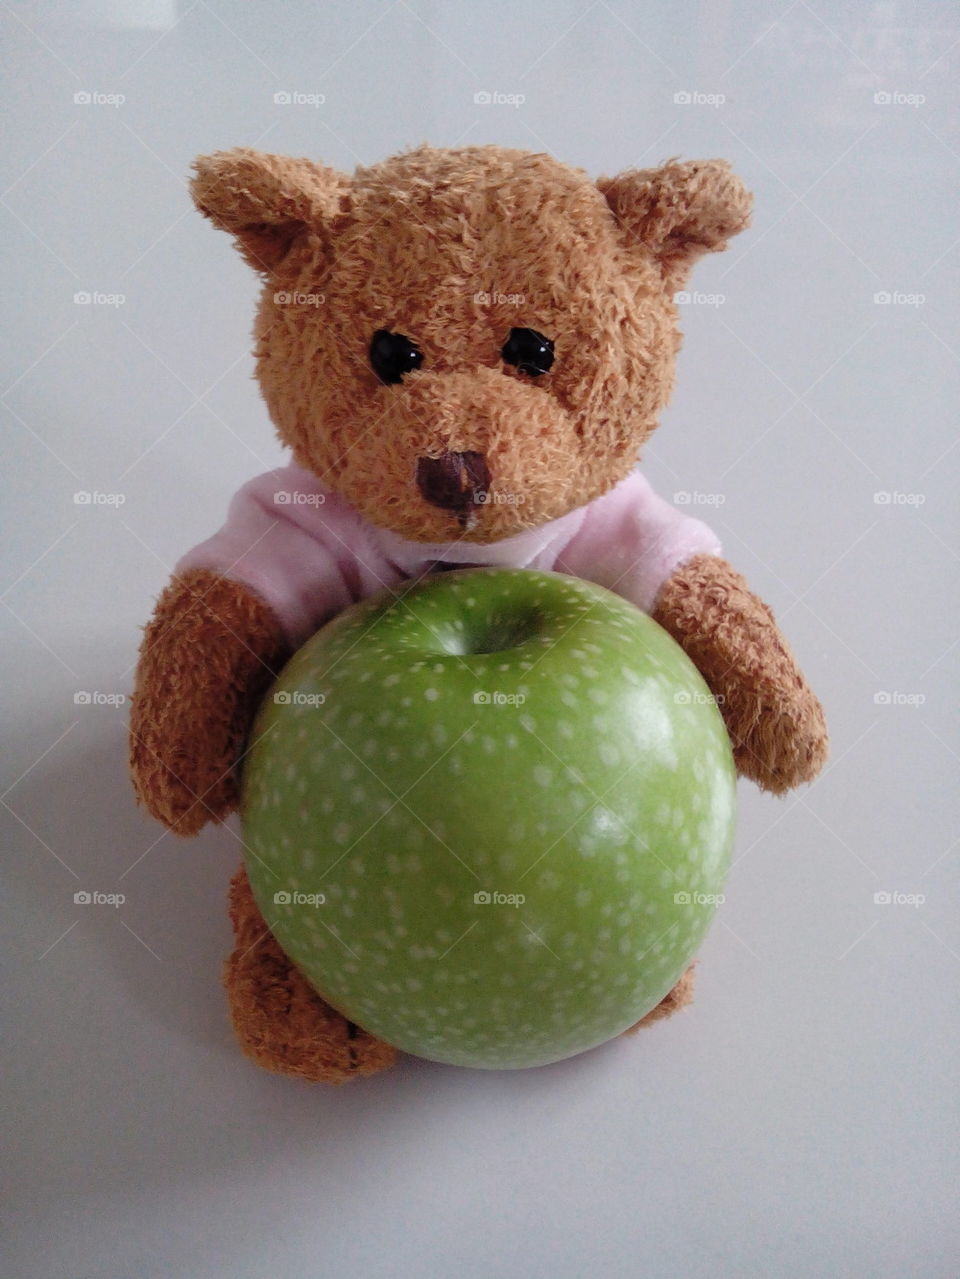 teddy bear with green apple